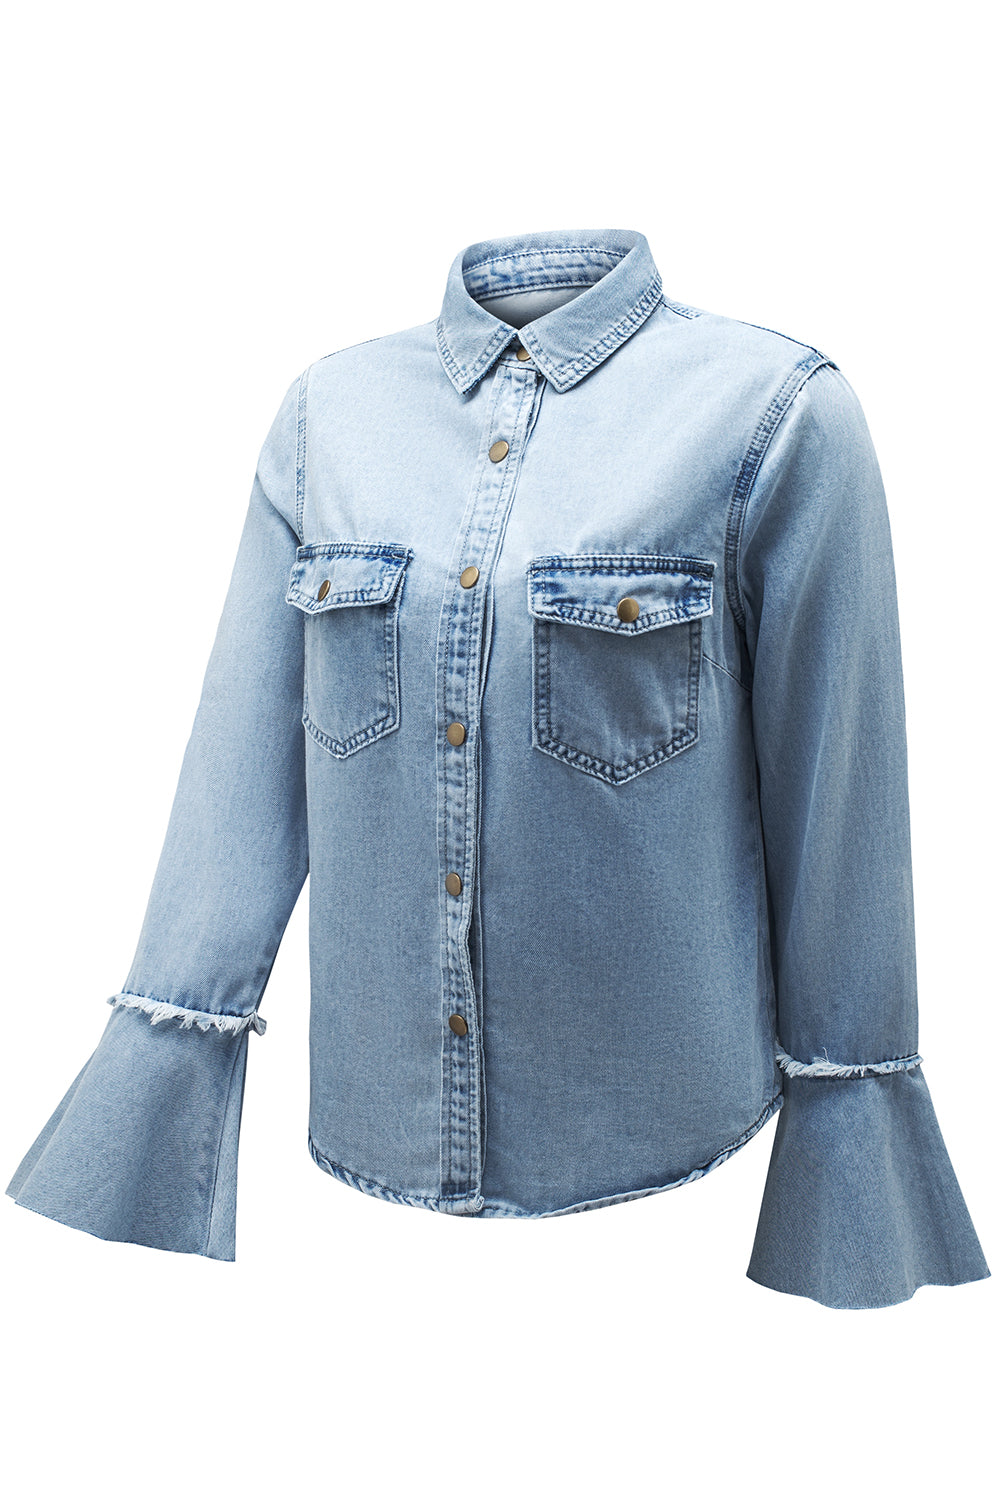 Himmelblaue, geknöpfte Jeansjacke mit Glockenärmeln und Brusttaschen